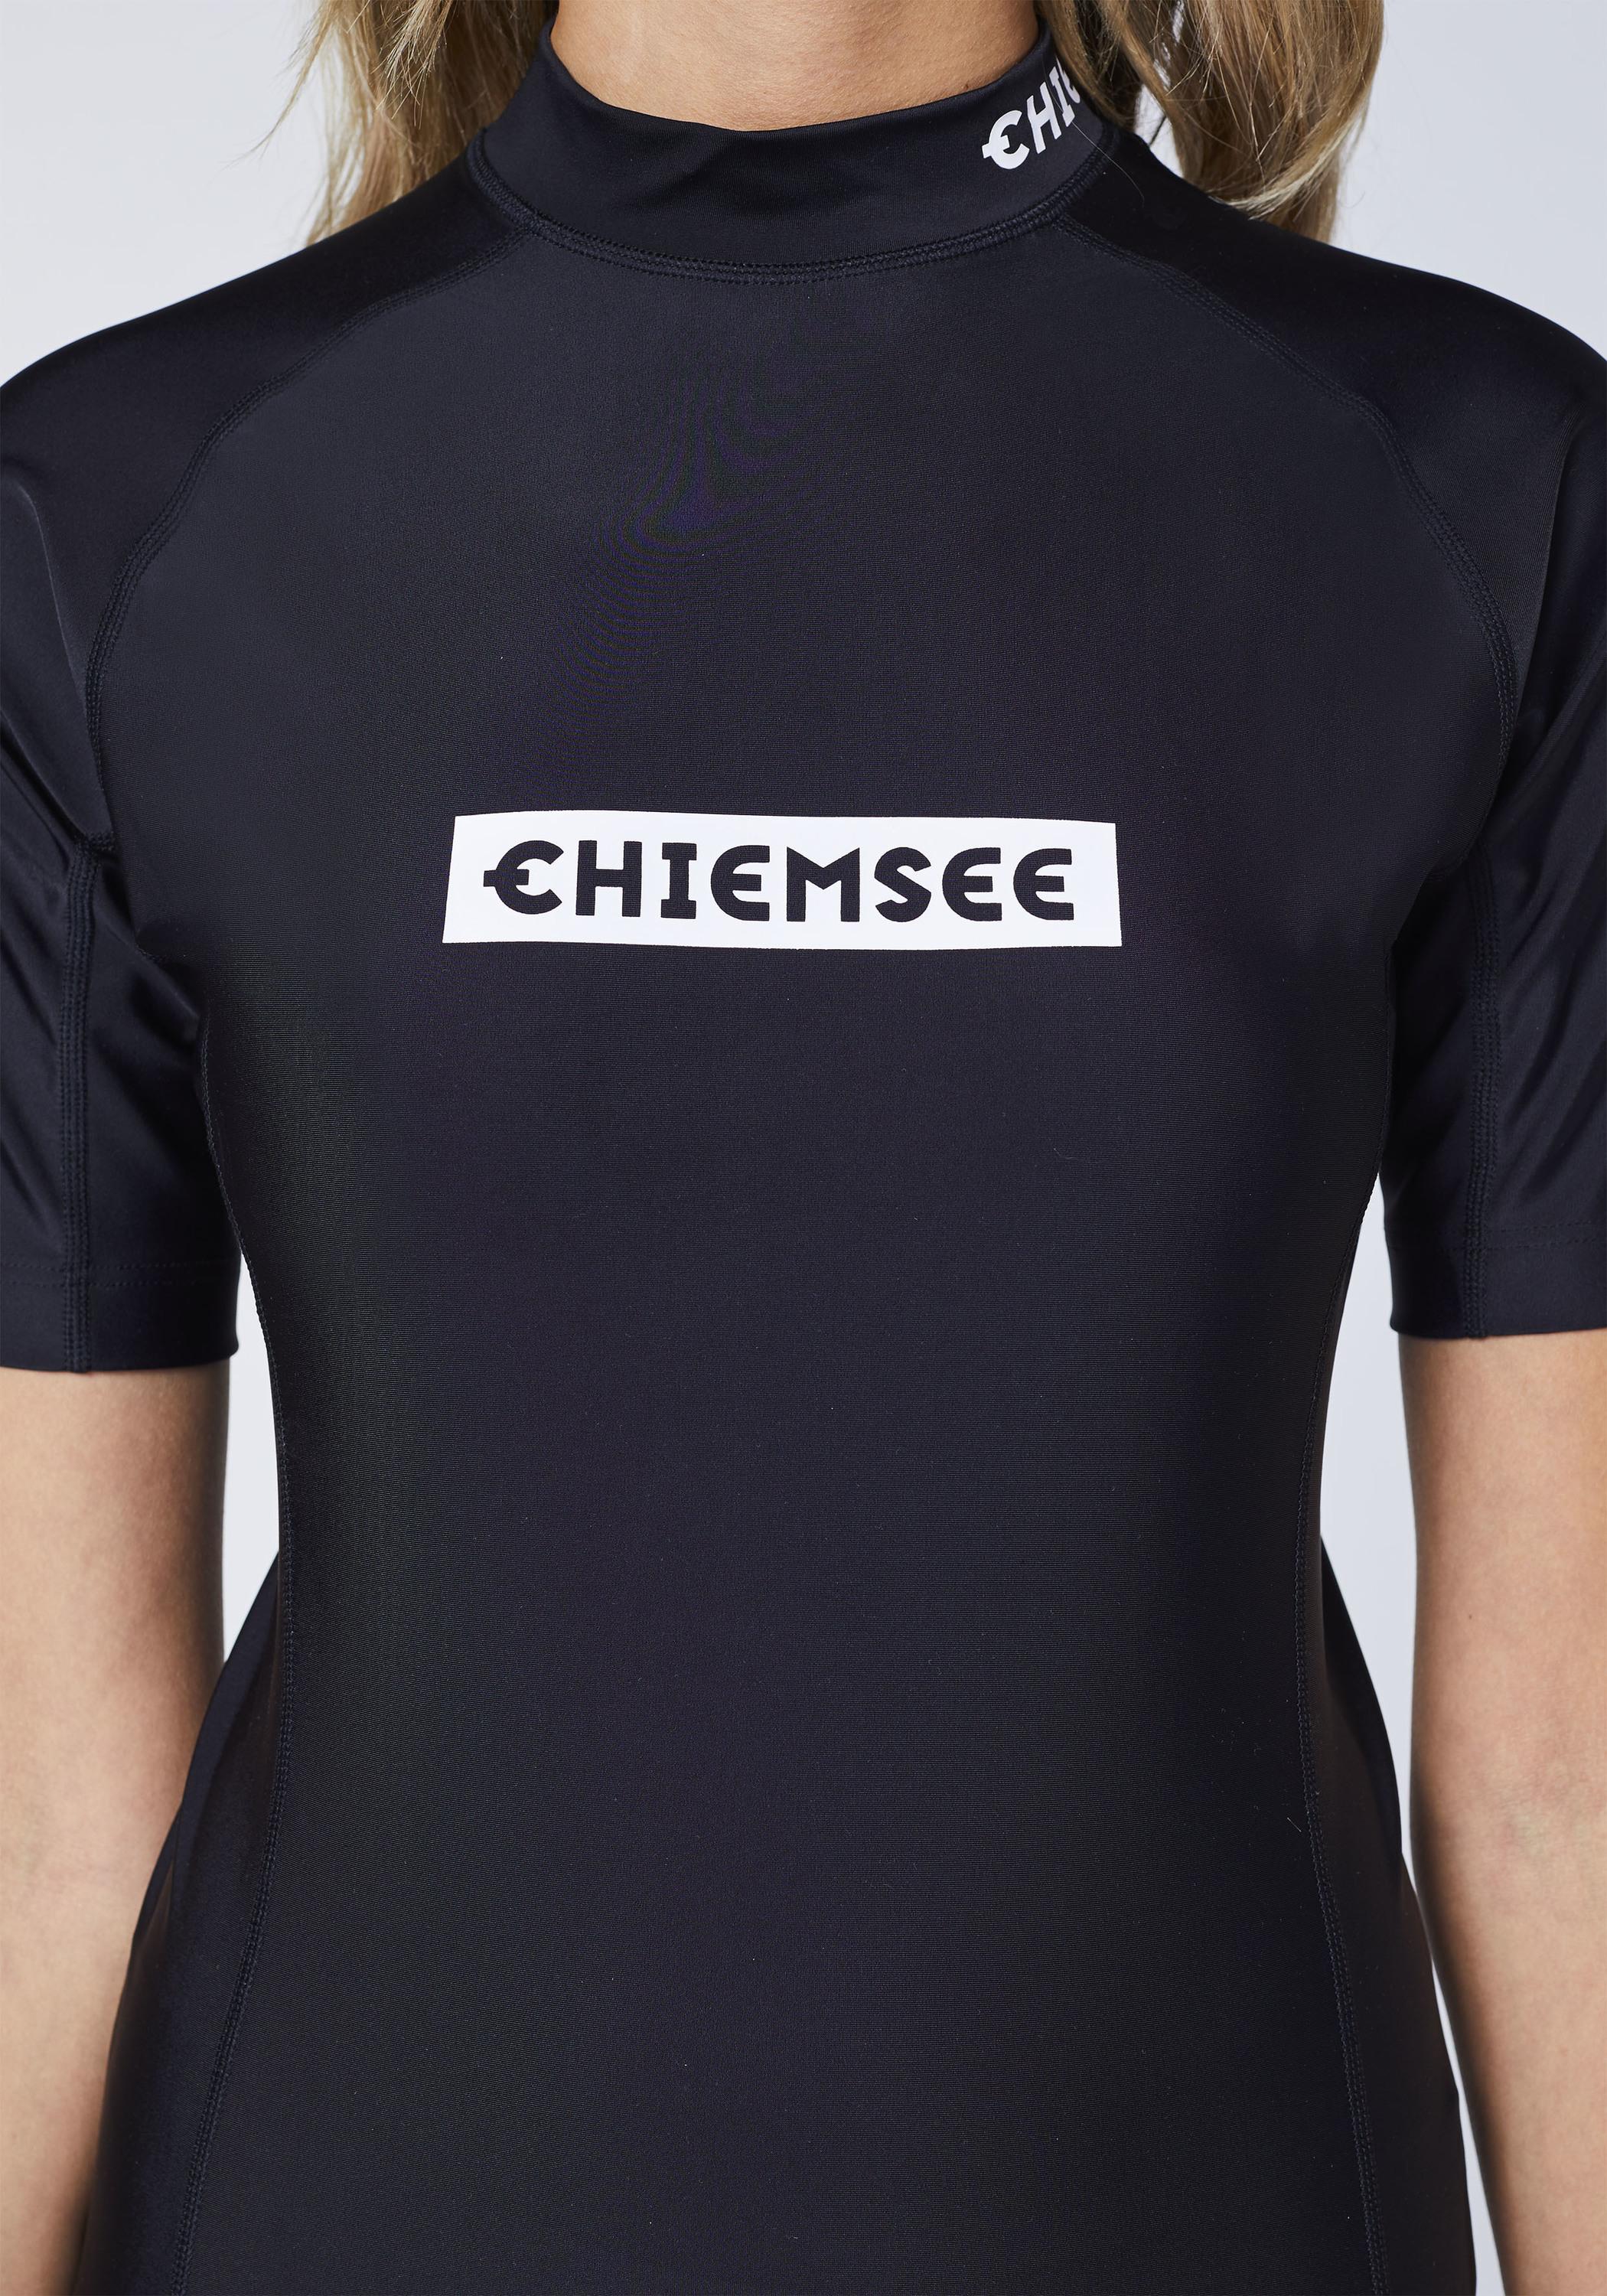 Chiemsee Badeshirt Surf Shirt SportScheck Black Shop im new Deep Online kaufen von